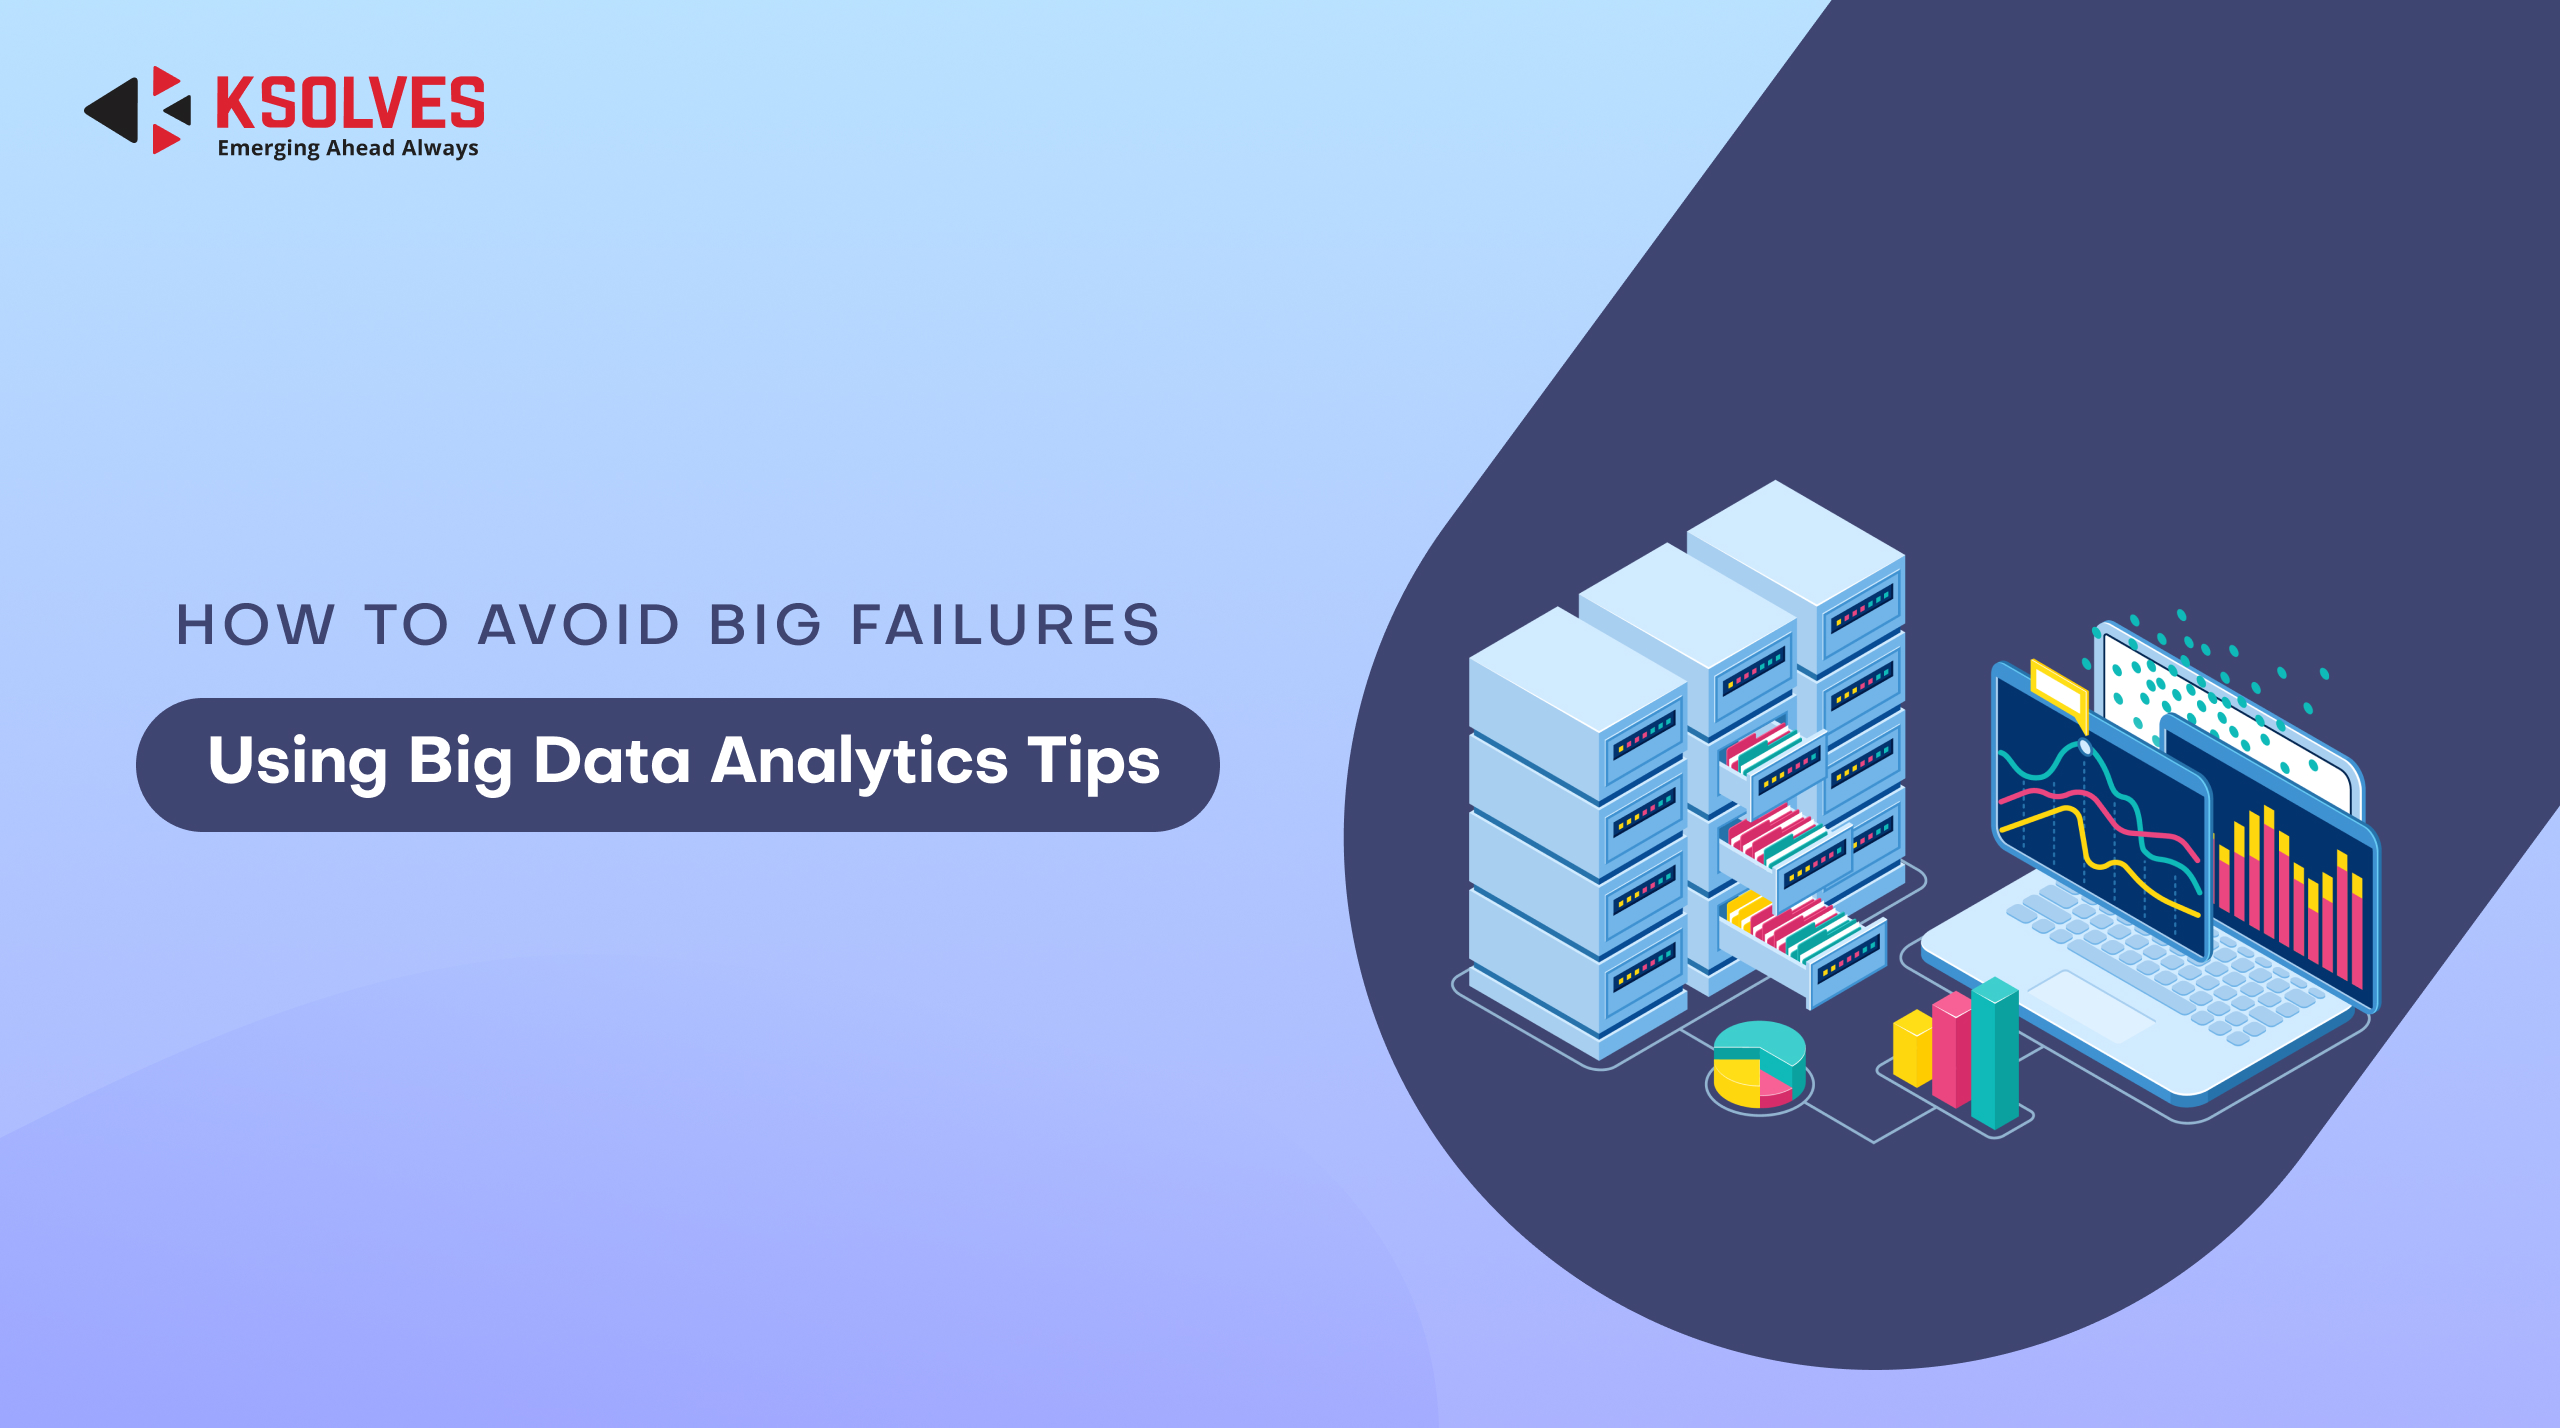 Big Data Analytics tips